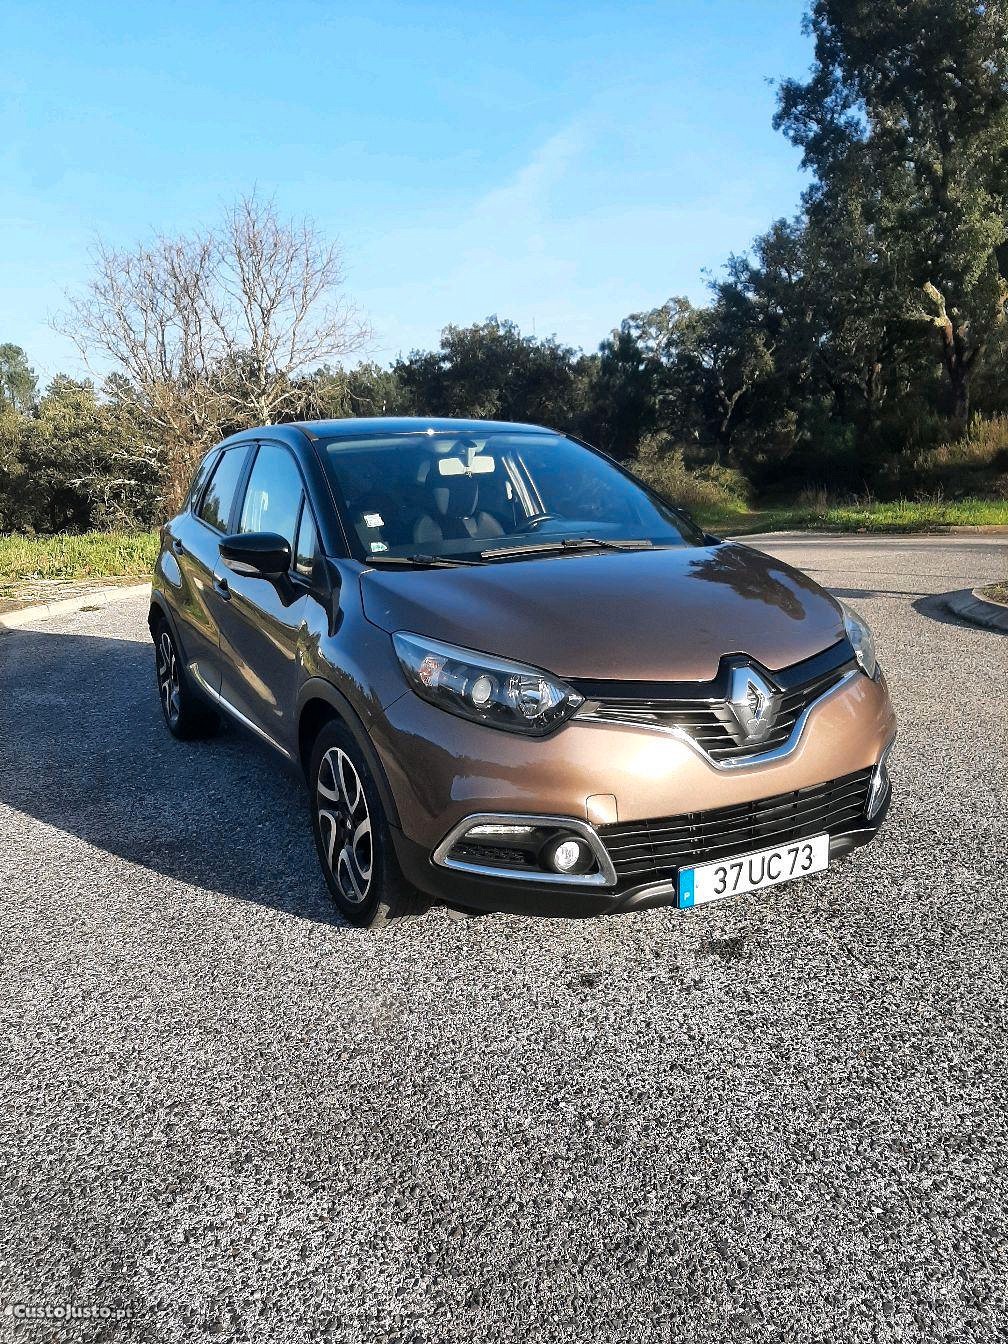 Renault Captur 1.5 dci impecavel Possibilidade de financiamento